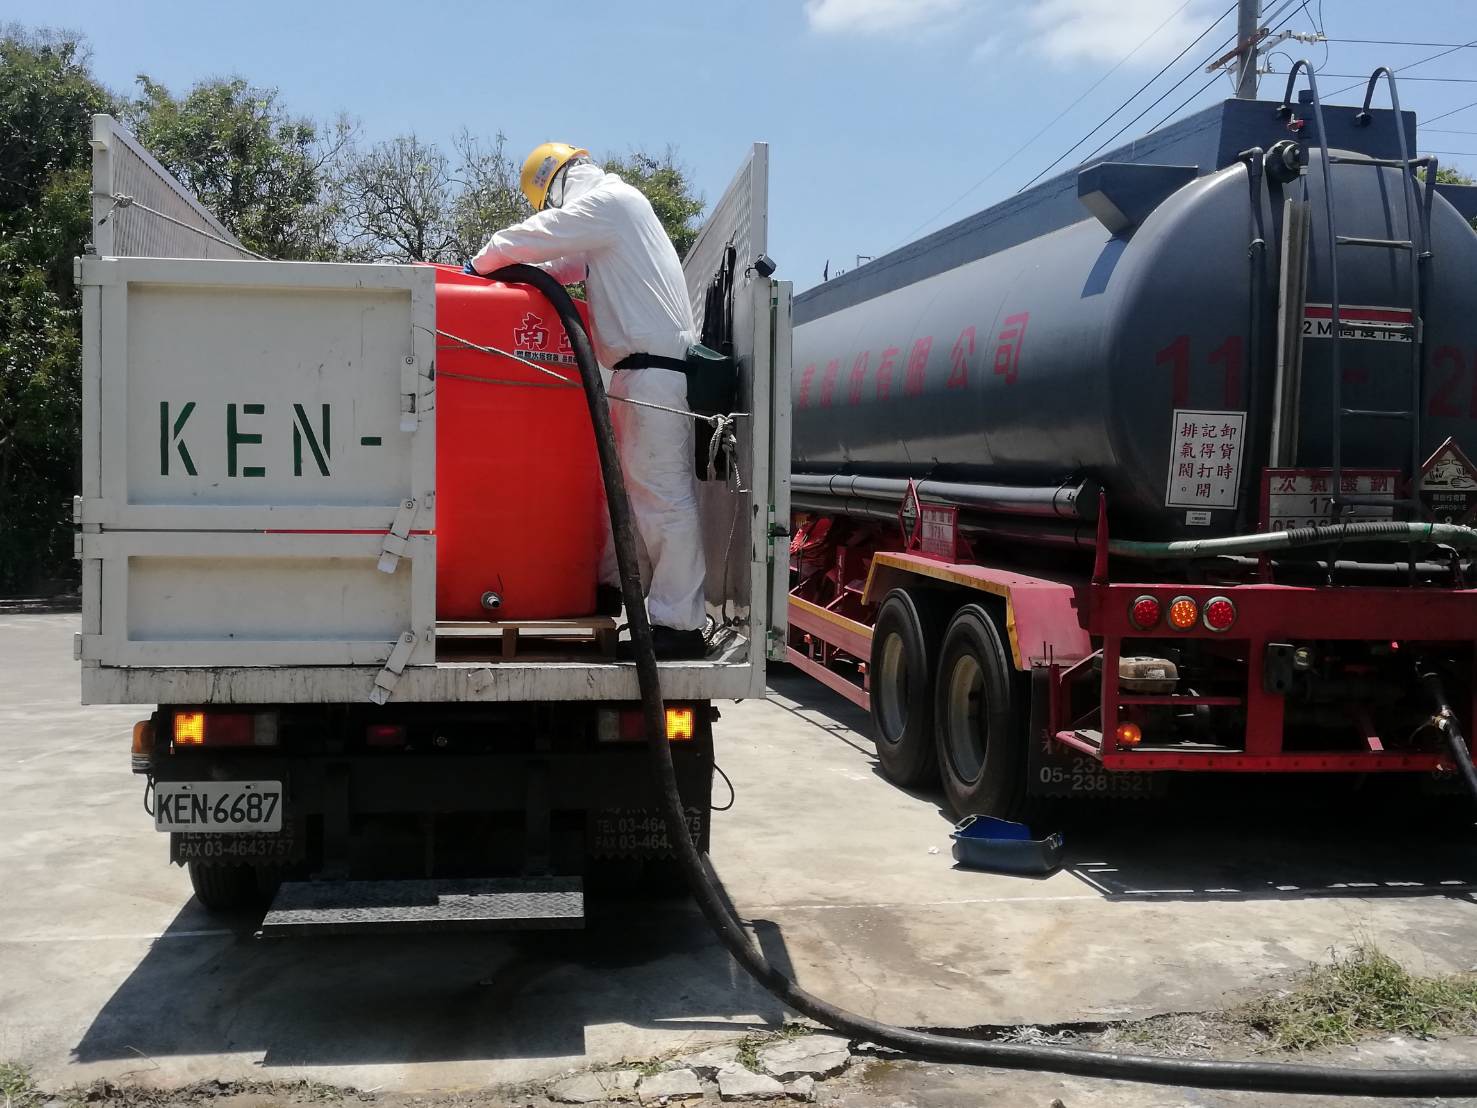 台塑塑膠工業股份有限公司特別供應雲林縣各鄉鎮市公所清潔隊消毒水20,000公升